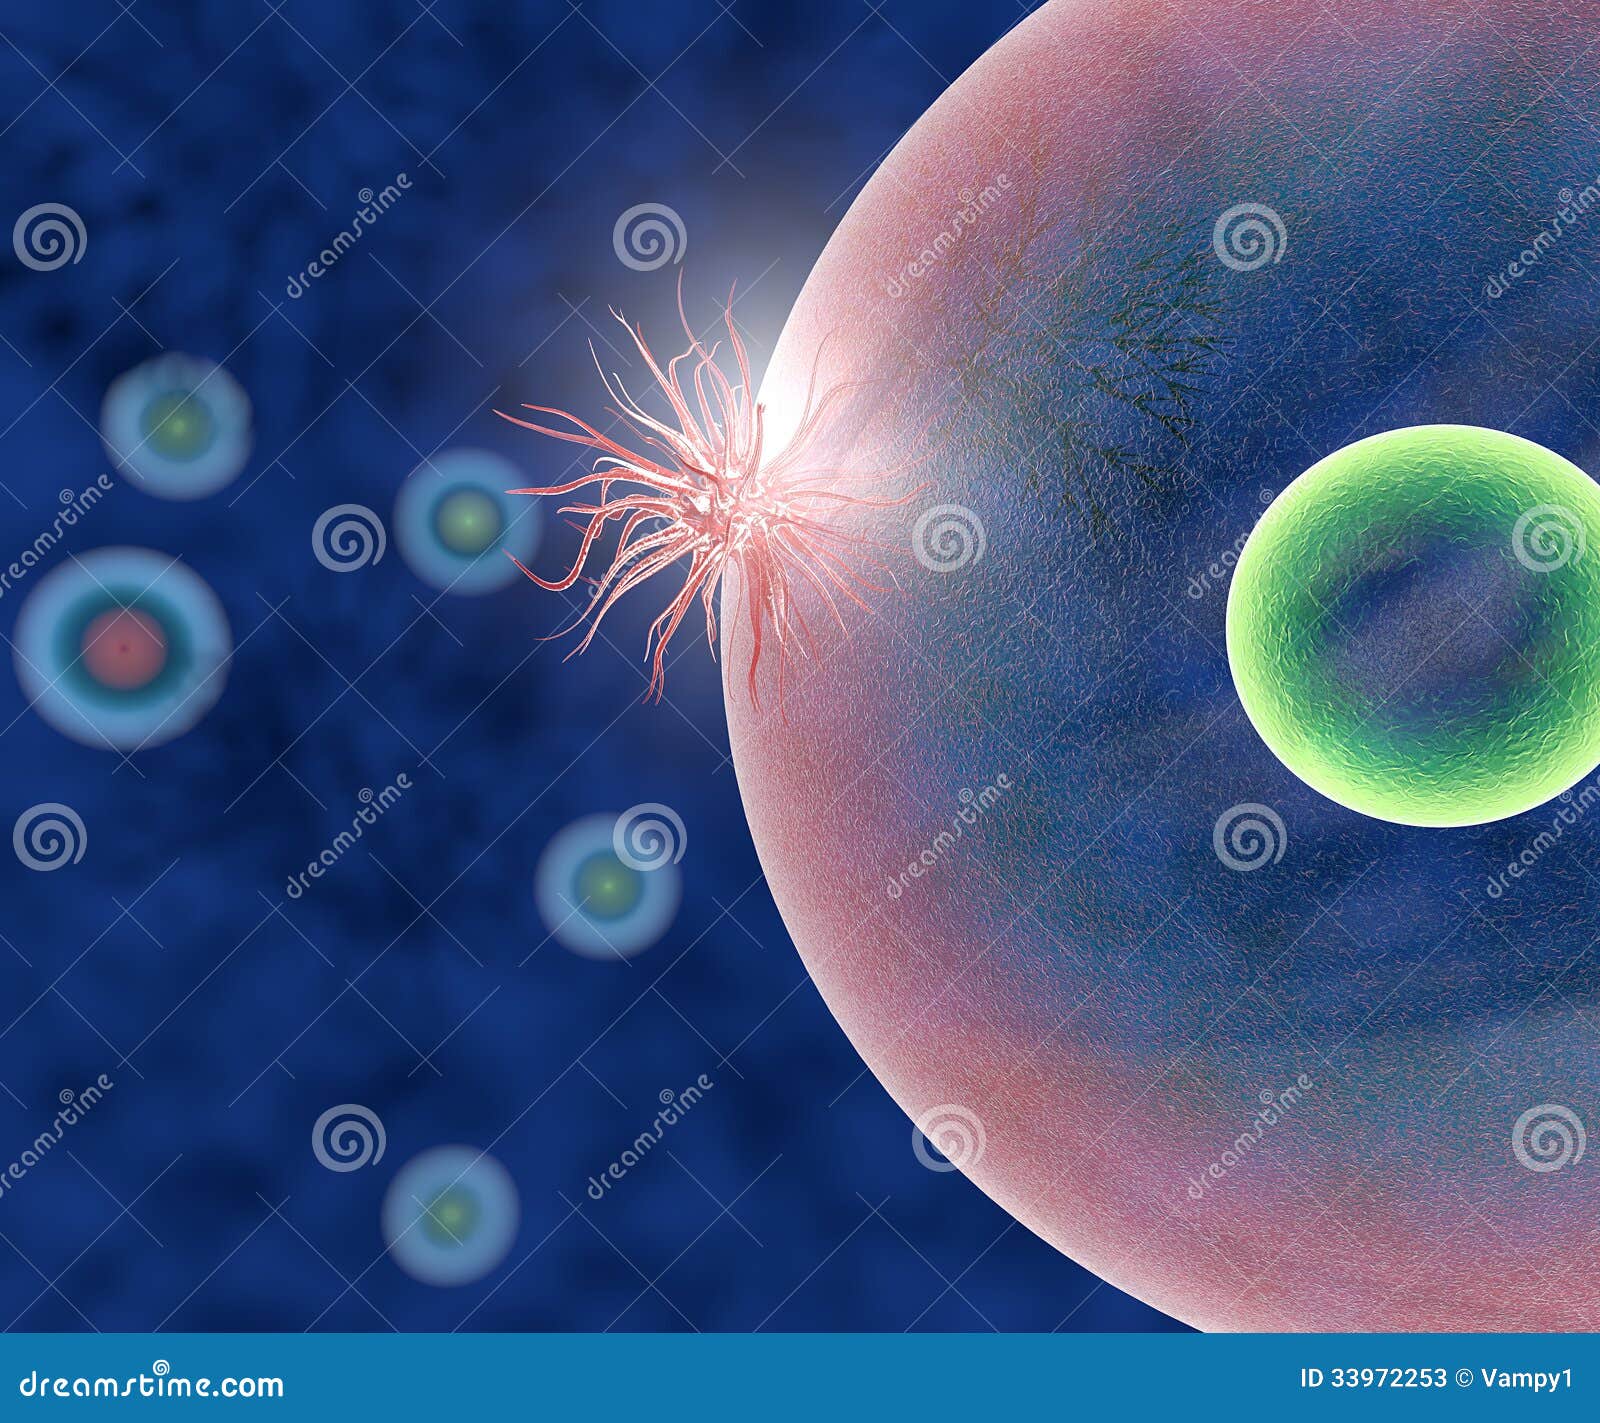 Атакующие клетки. Вирус атакует клетку. Здоровая клетка. Вирус атакует клетку картинка. Название клетки на которую нападает вирус.